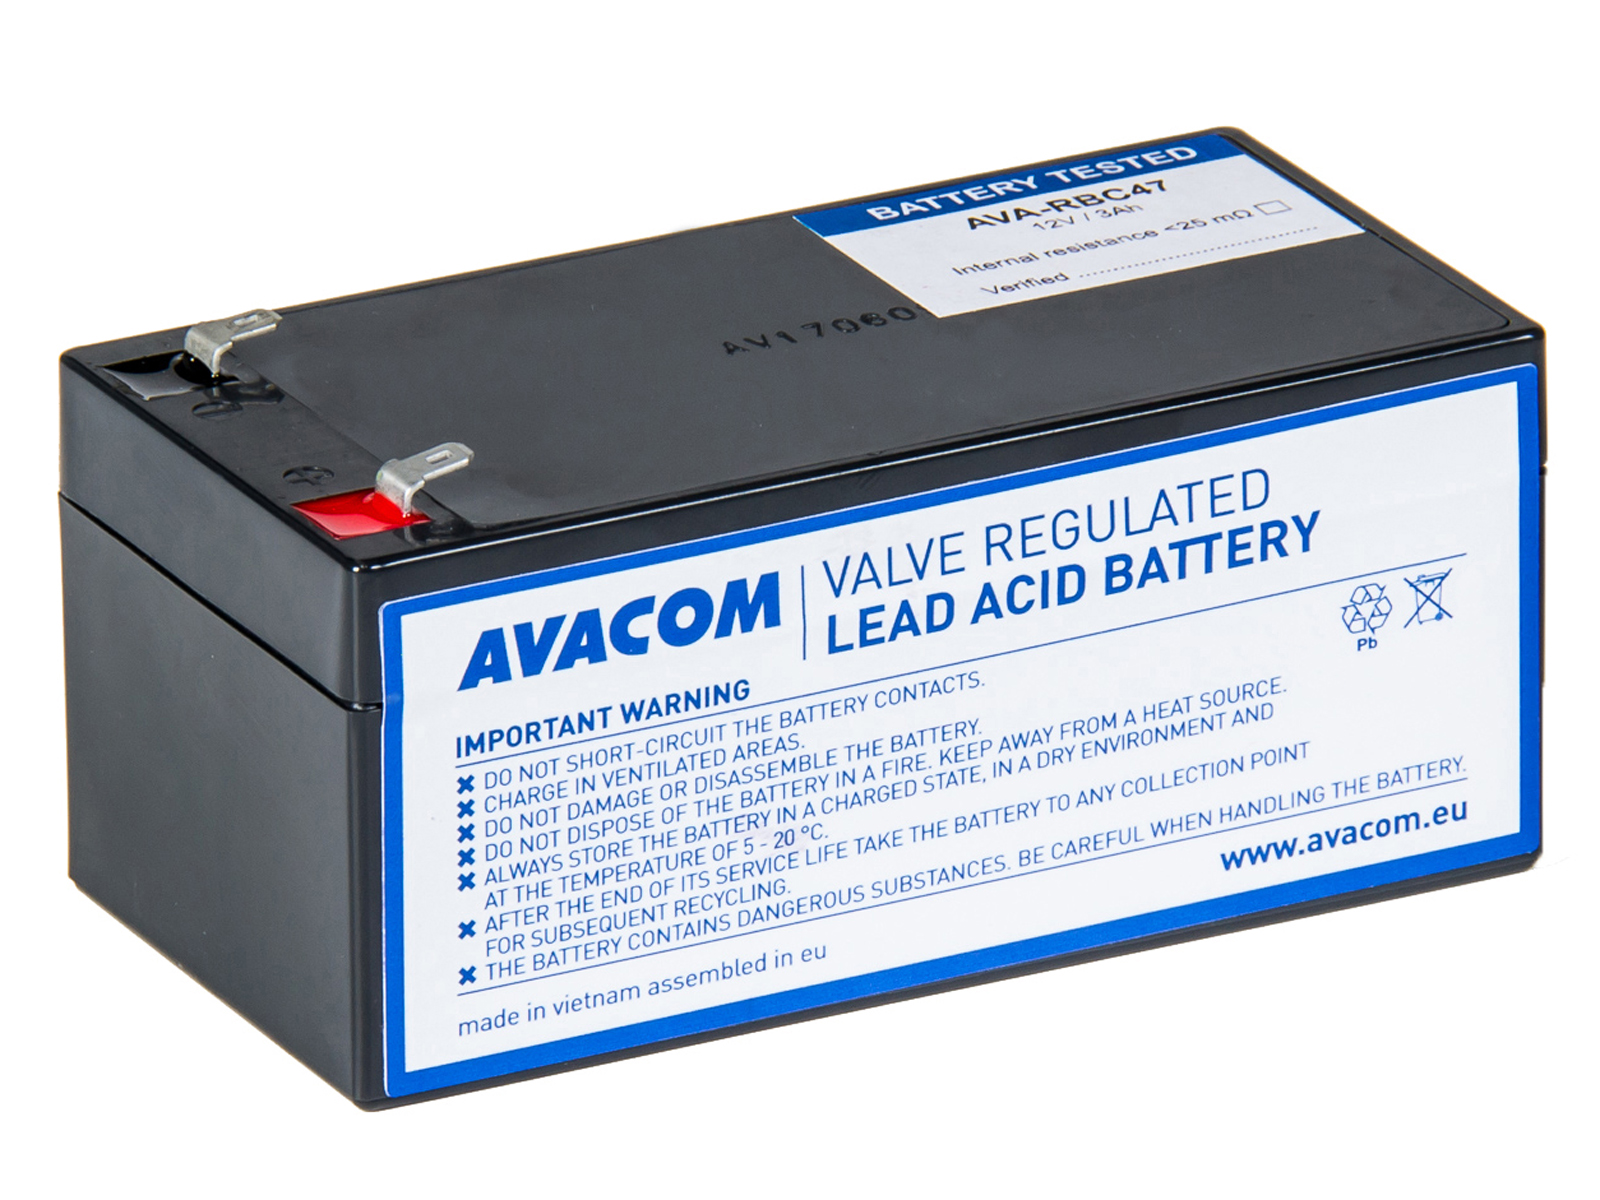 Baterie Avacom RBC47 bateriový kit - náhrada za APC - neoriginální